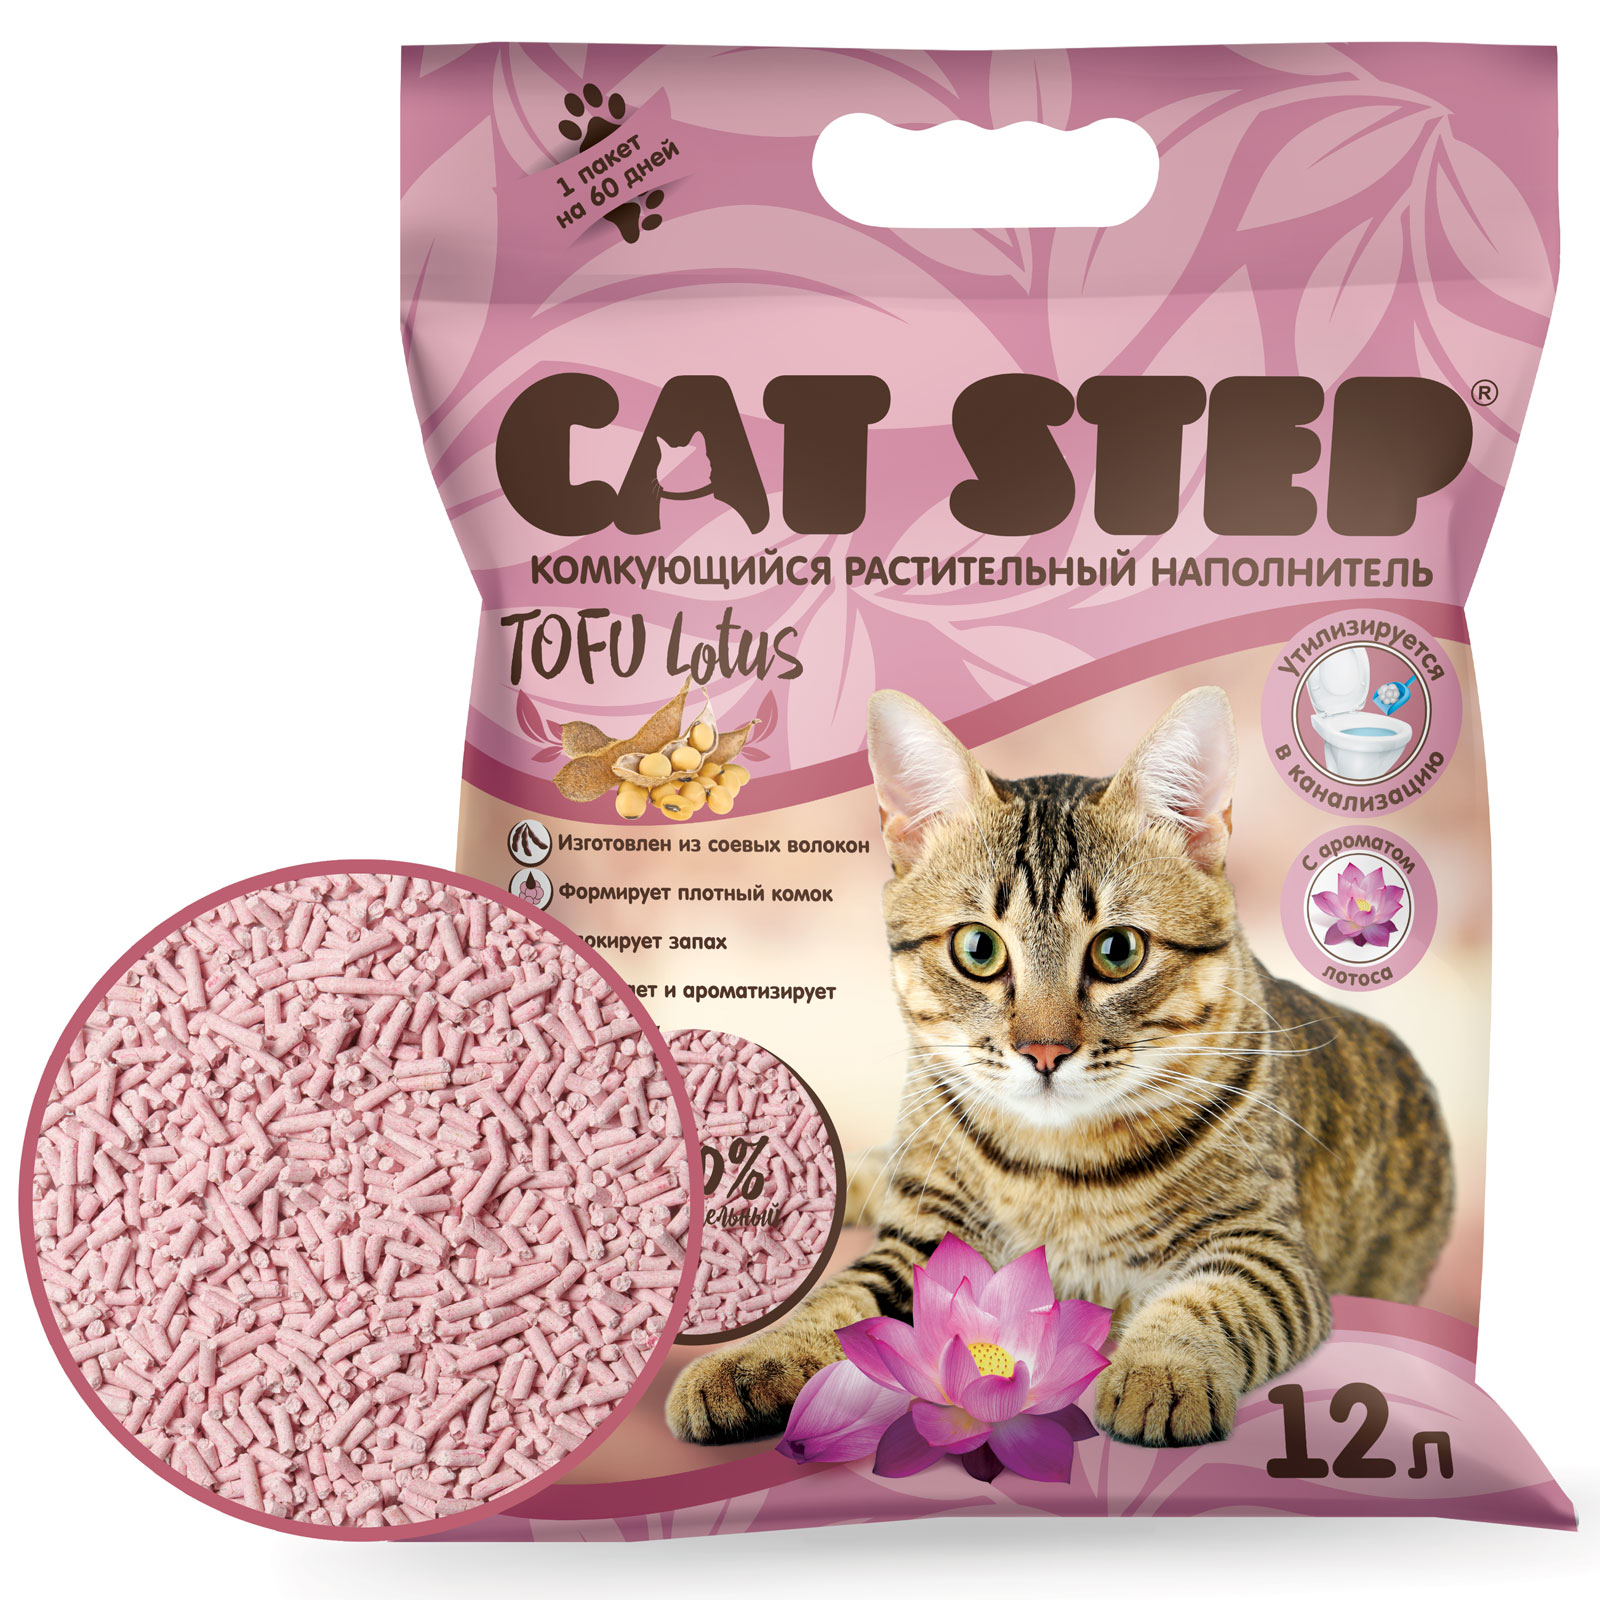 Наполнитель для кошек Cat Step Tofu Lotus растительный комкующийся 12л - фото 3